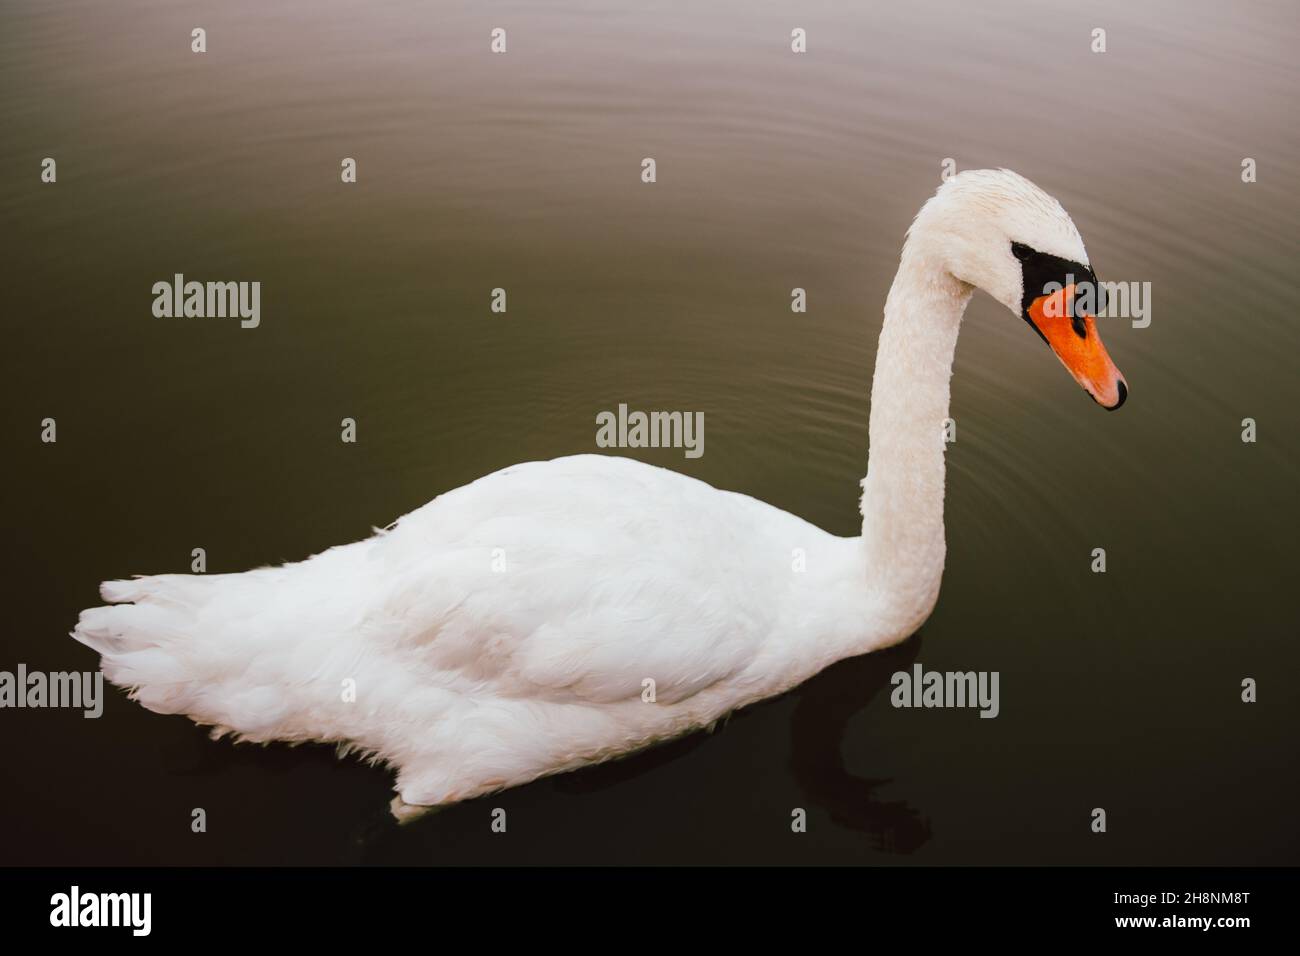 White swan on a lake. Stock Photo